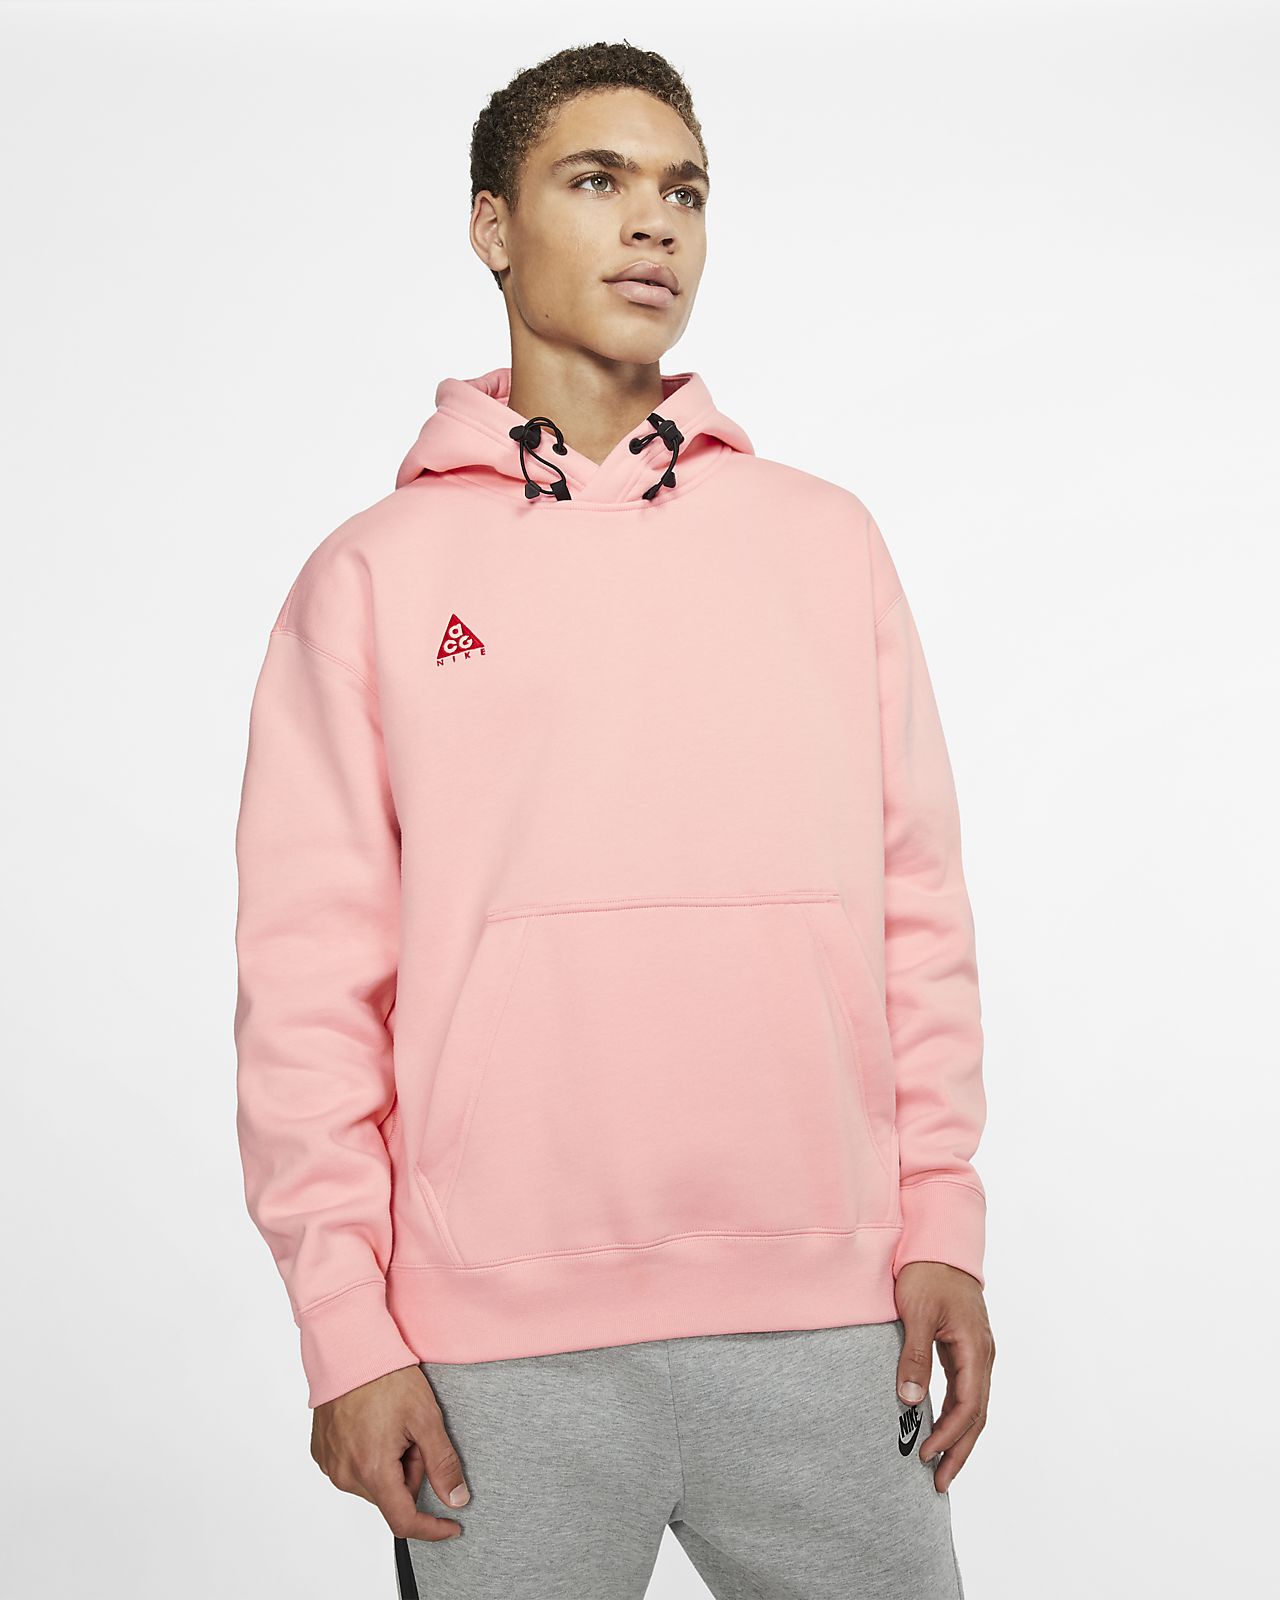 nike acg pullover hoodie pink